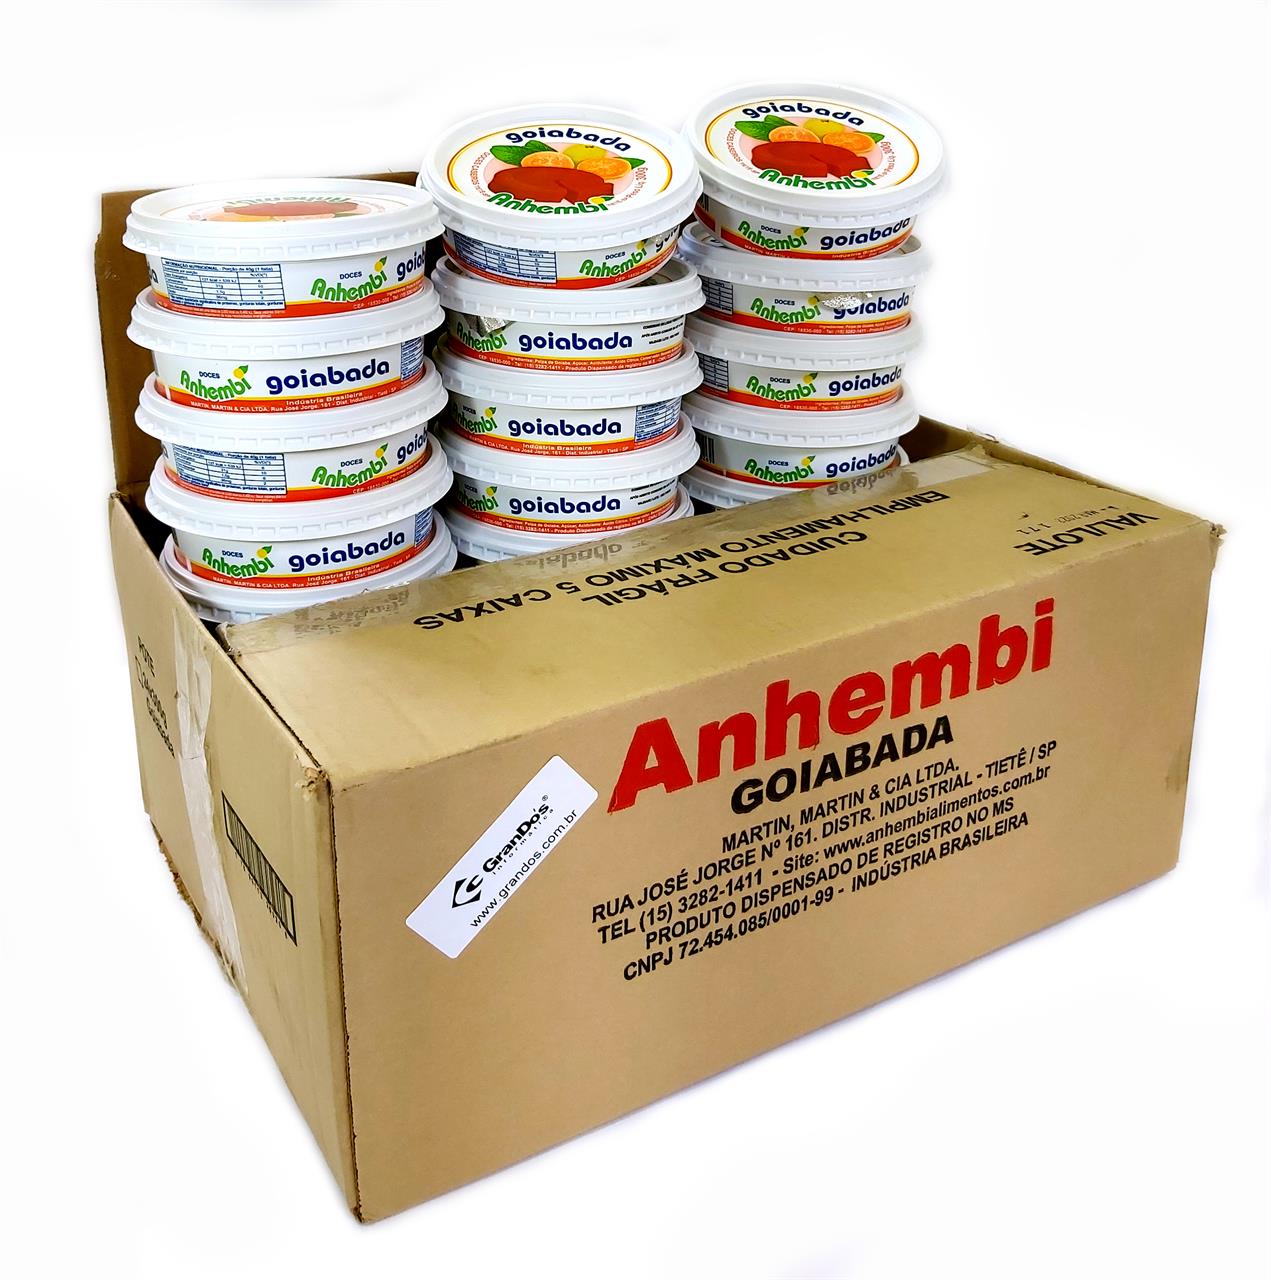 Produtos Adquiridos Diretamente do Fabricante - Goiabada Tradicional Anhembi na Caixa com 24 Potes